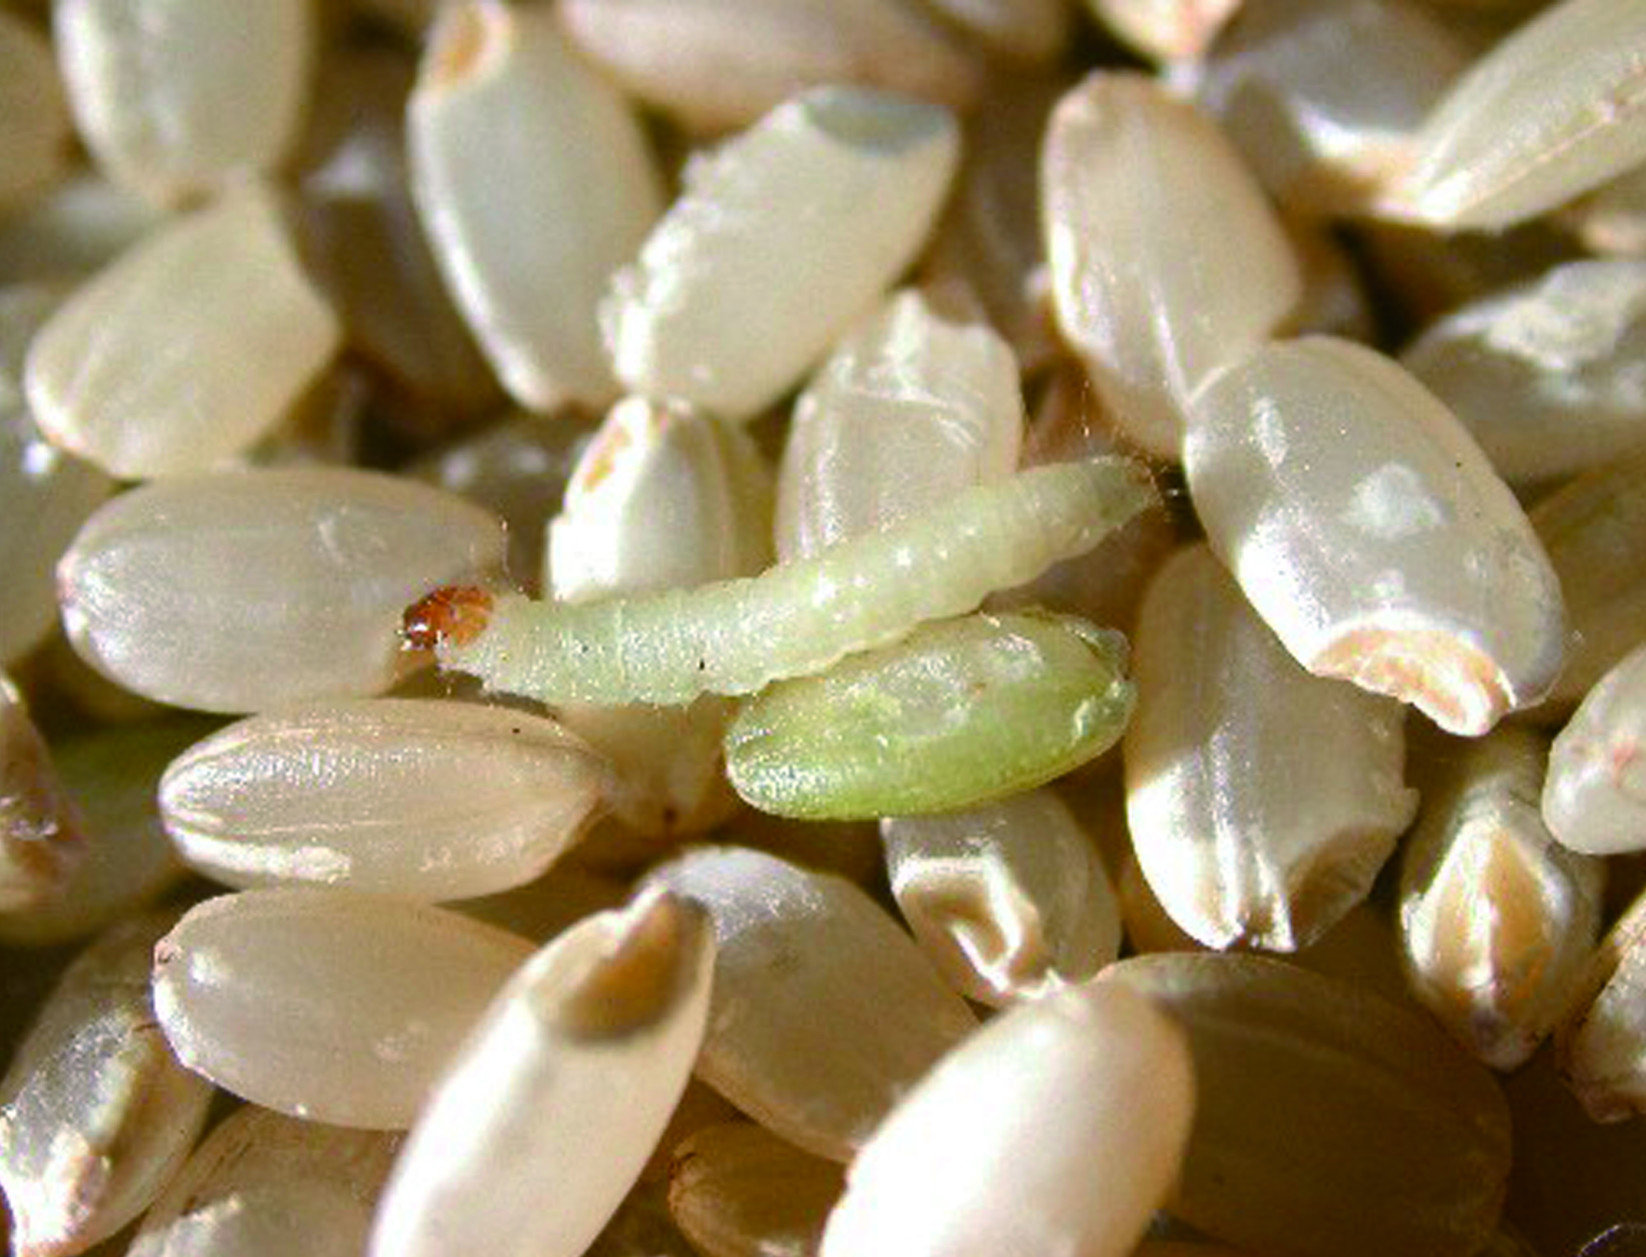 印度穀蛾有著特別的習性：成蟲不取食，只喝水，所以主要的危害來自幼蟲。成蟲將蟲卵產在糧粒表面或包裝品縫隙中，幼蟲潛伏在內部取食。幼蟲會大量地吐絲，使得糧食包裝內部變得潮濕、容易發霉，並且排放大量帶有臭味的紅色糞便，是許多地區的主要糧食害蟲。